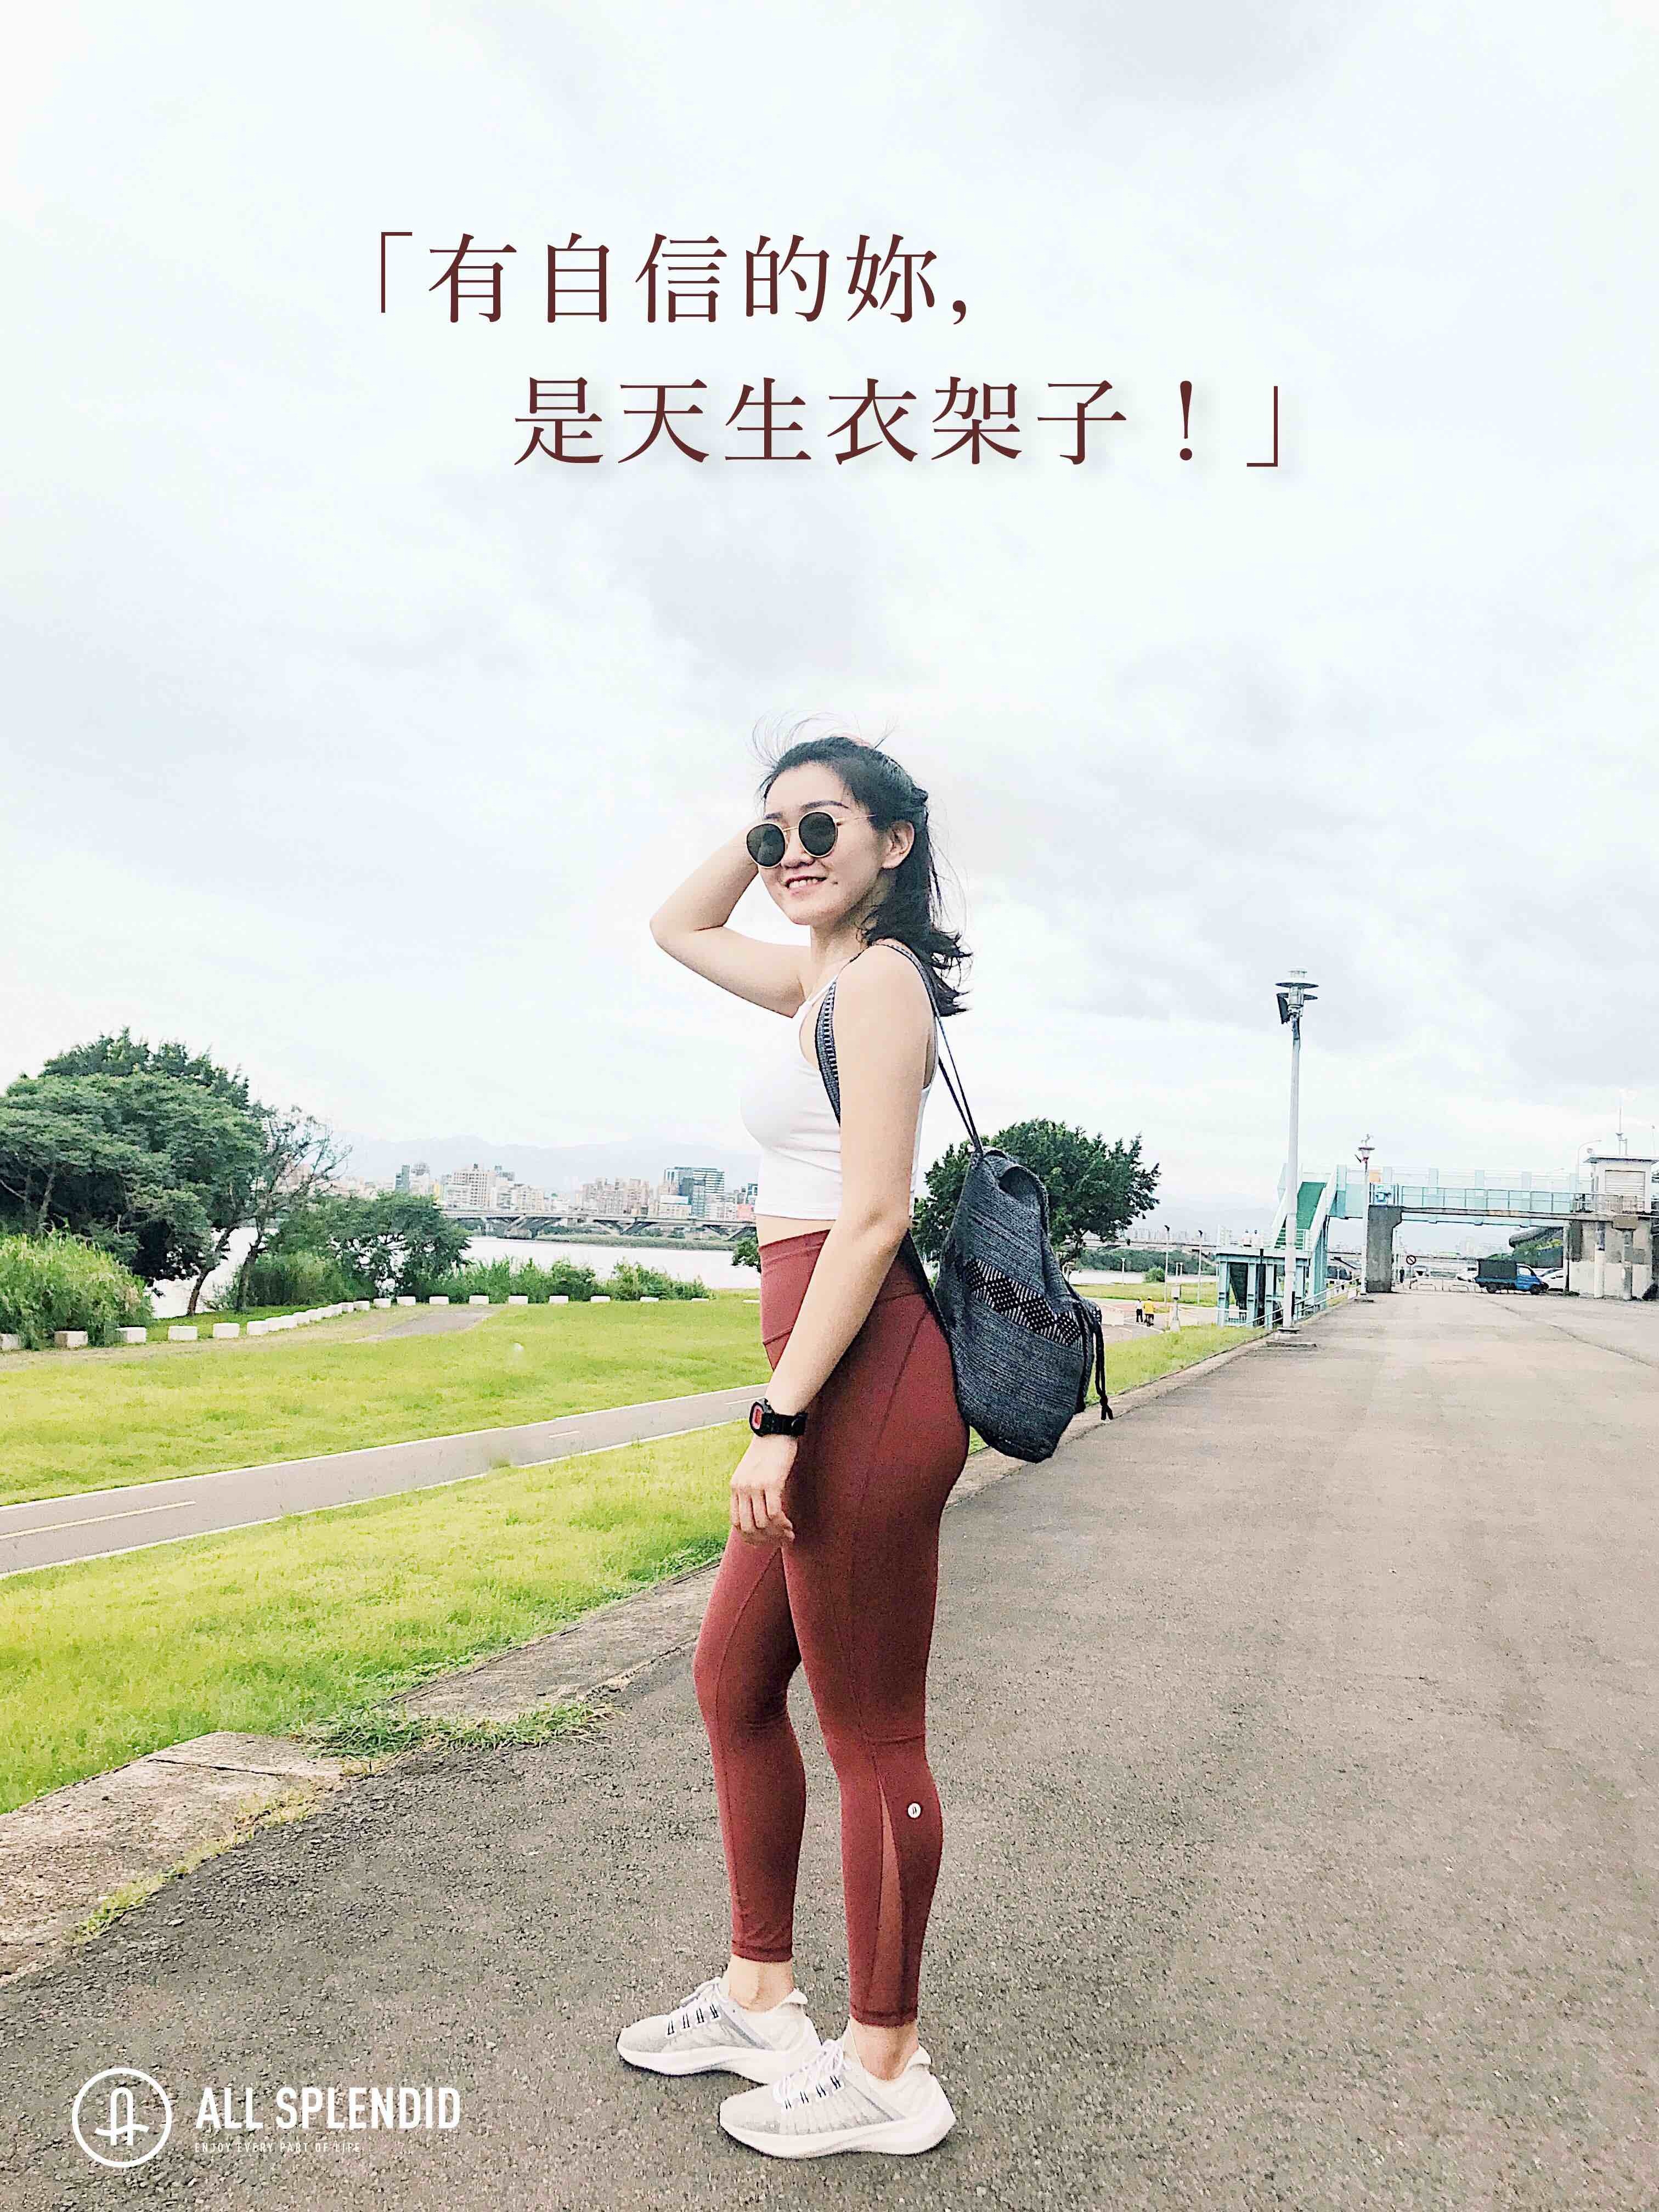 一名年輕女子站在小路上，身穿白背心紅色ASify 瑜伽褲，背著灰色背包。路旁是綠草地，遠景是城市高樓。整體營造出輕鬆自在的生活場景。